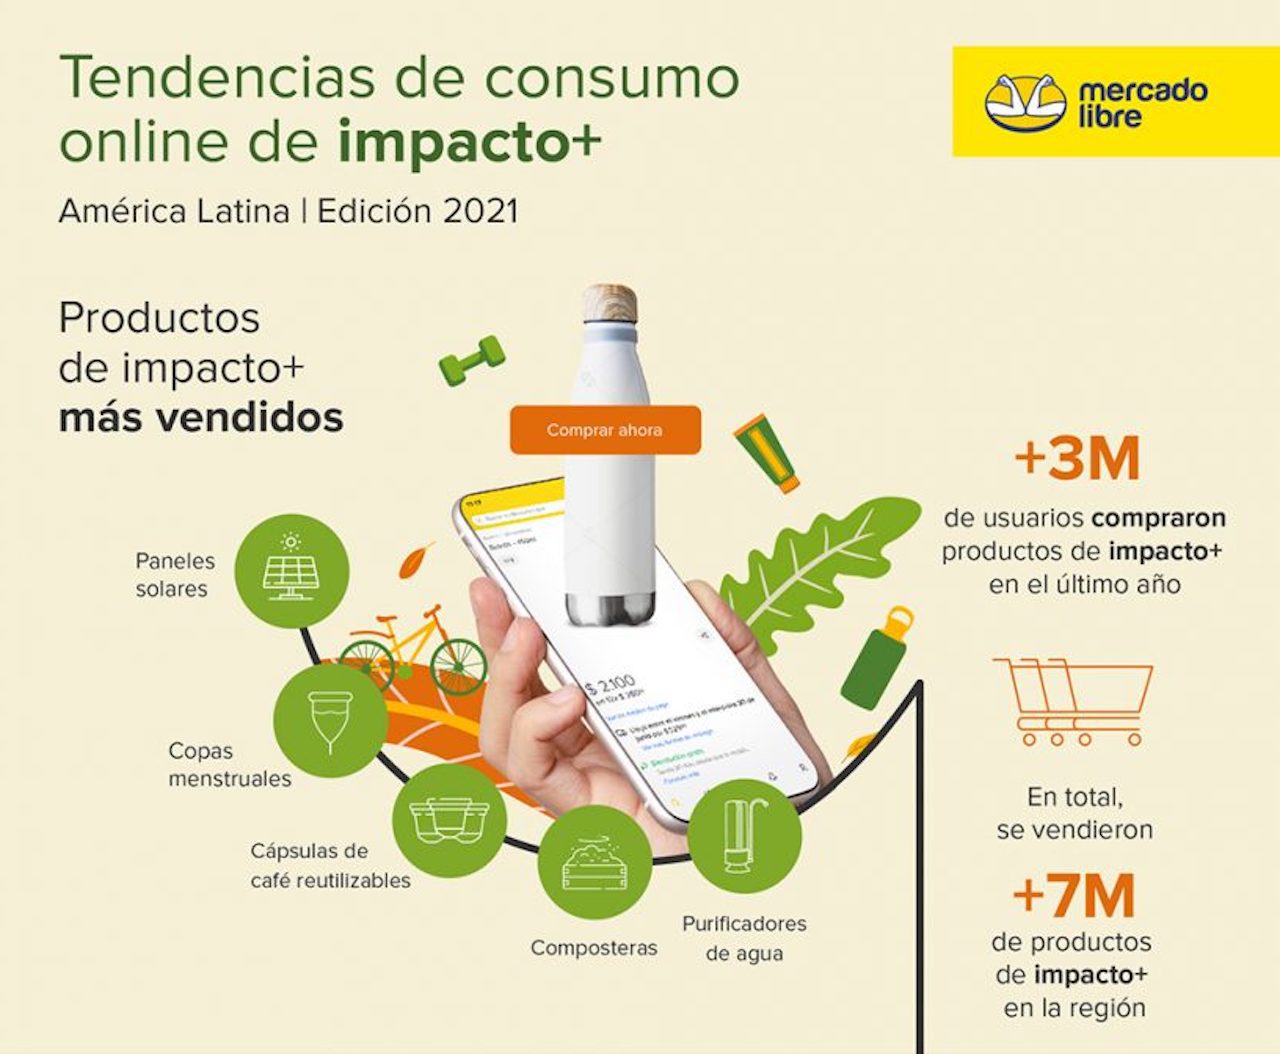 Este impacto positivo potenció además el ecosistema emprendedor: el último año en Argentina aumentó un 192 % la cantidad de vendedores sustentables. Hoy en día, hay más de 10.700 empresas y emprendedores que venden productos productos de impacto positivo en la región